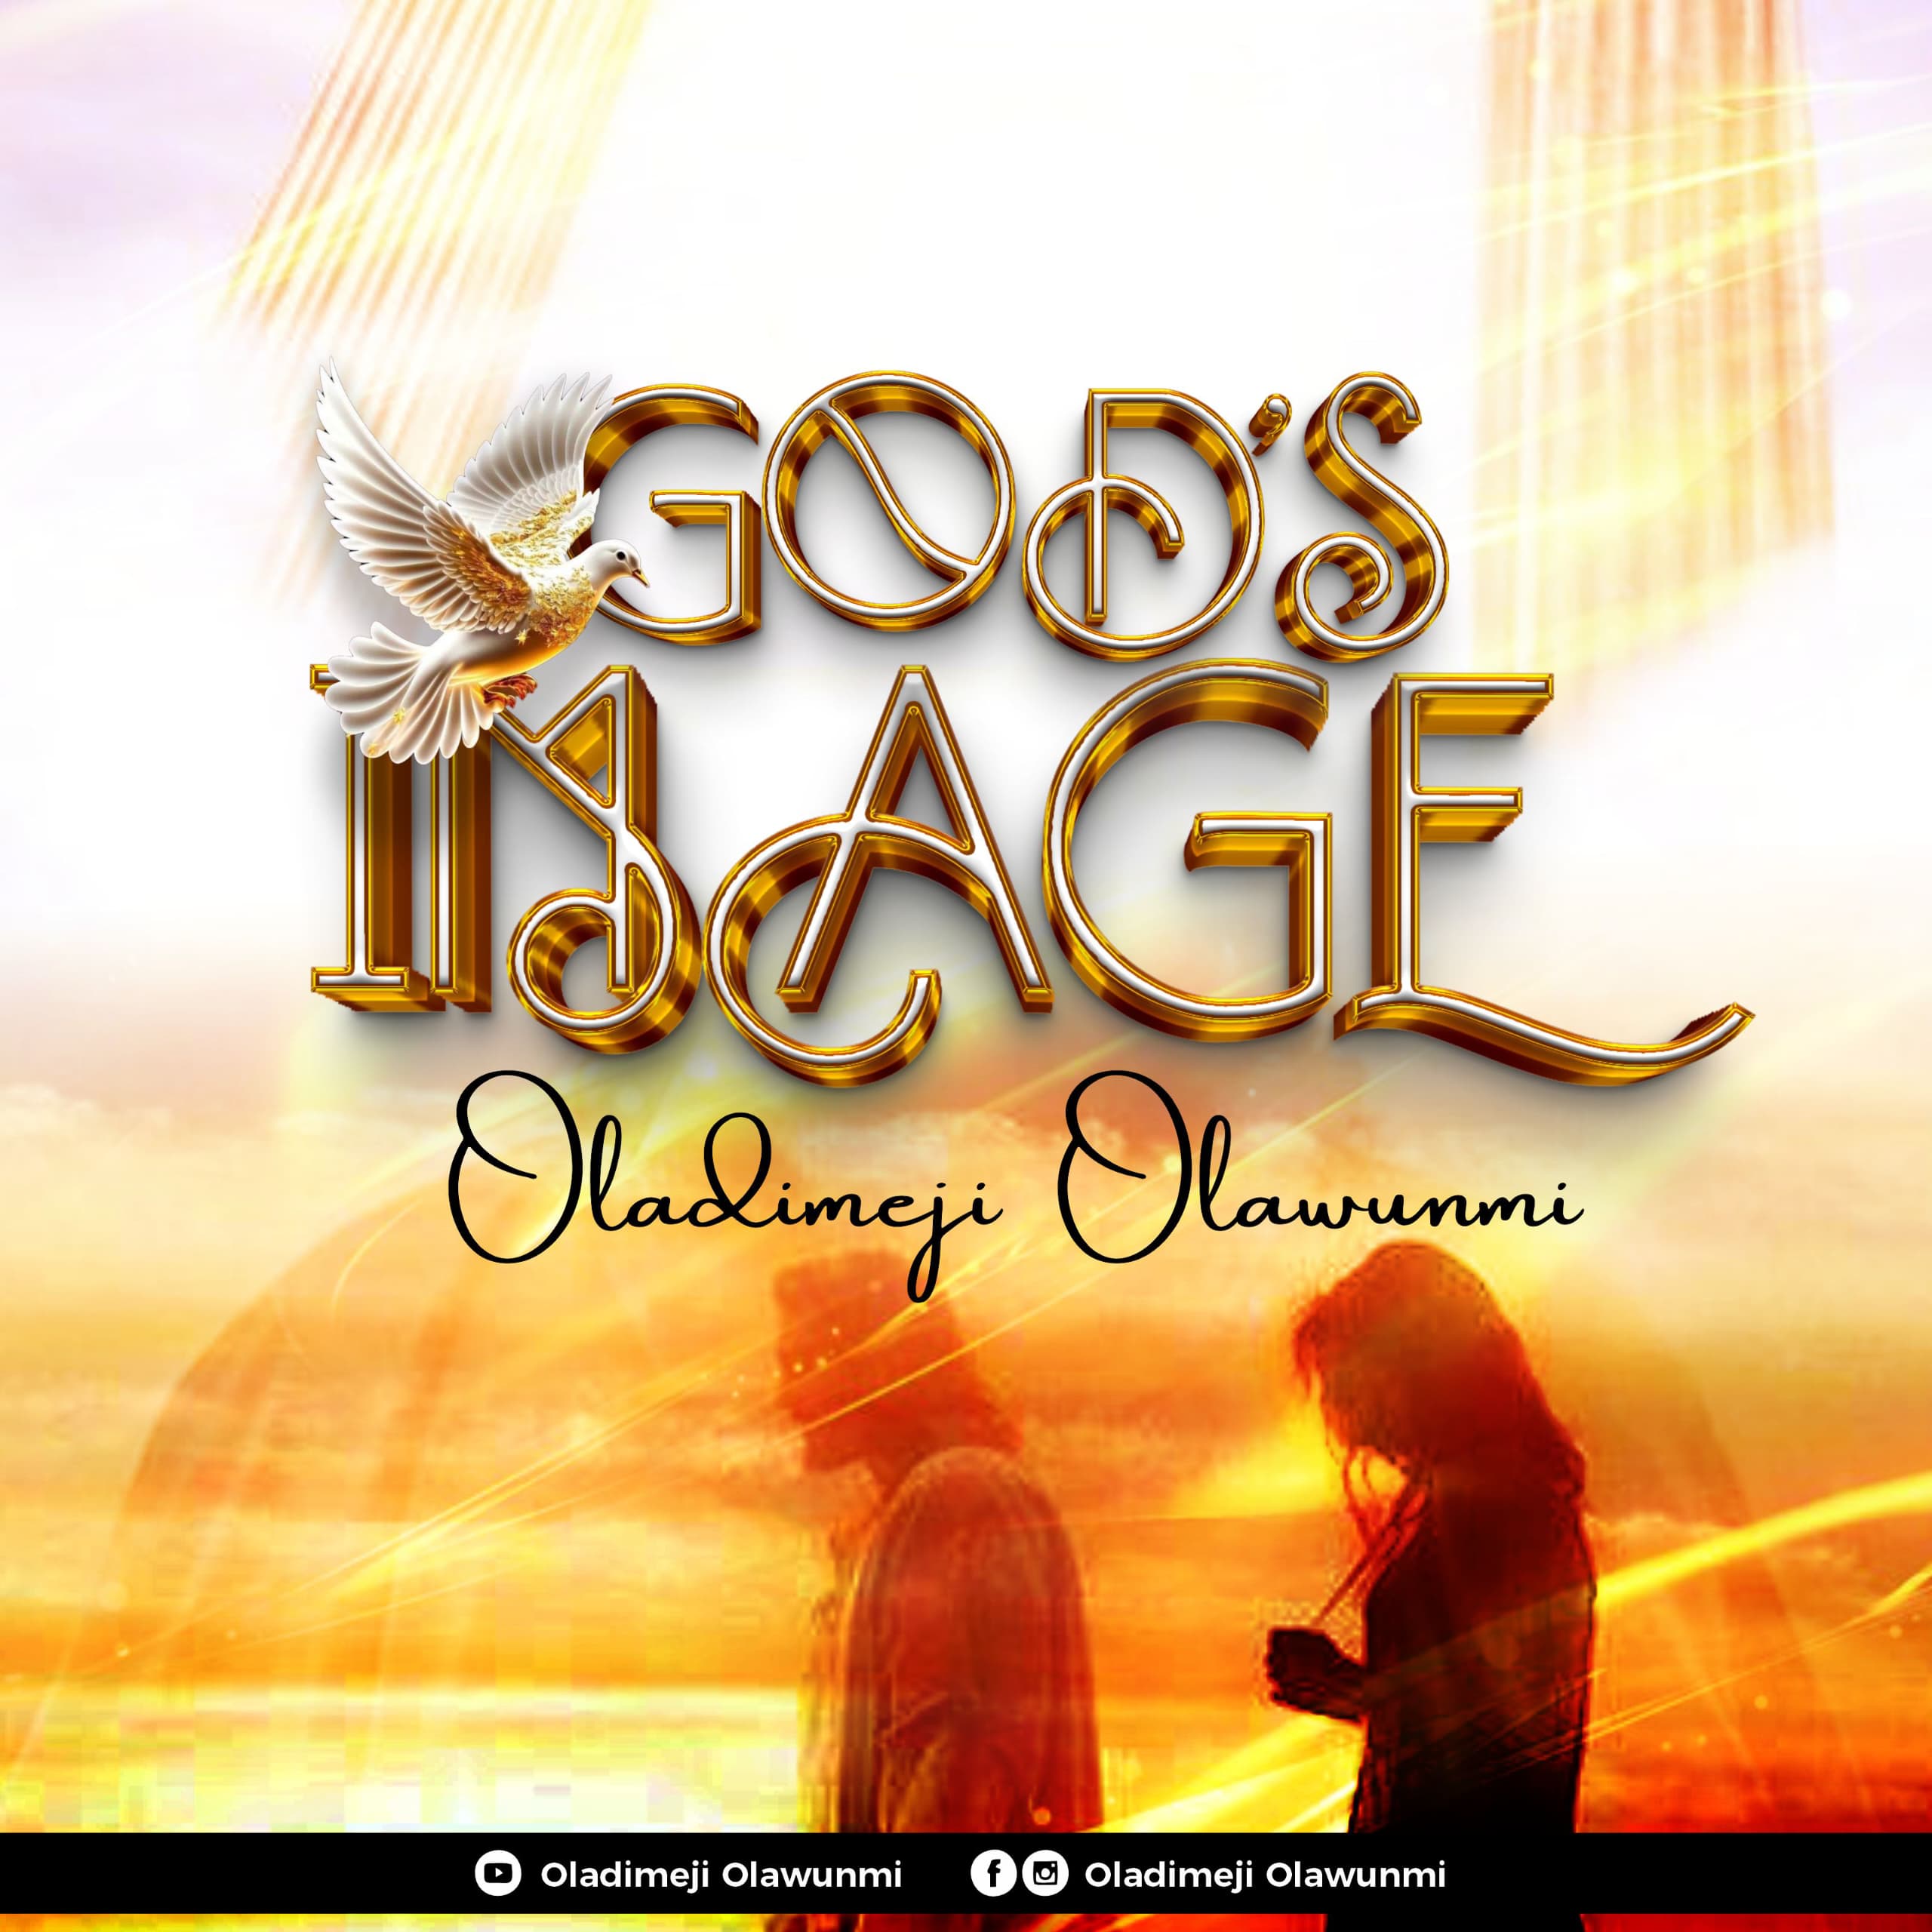 God's Image by Oladimeji Olawunmi